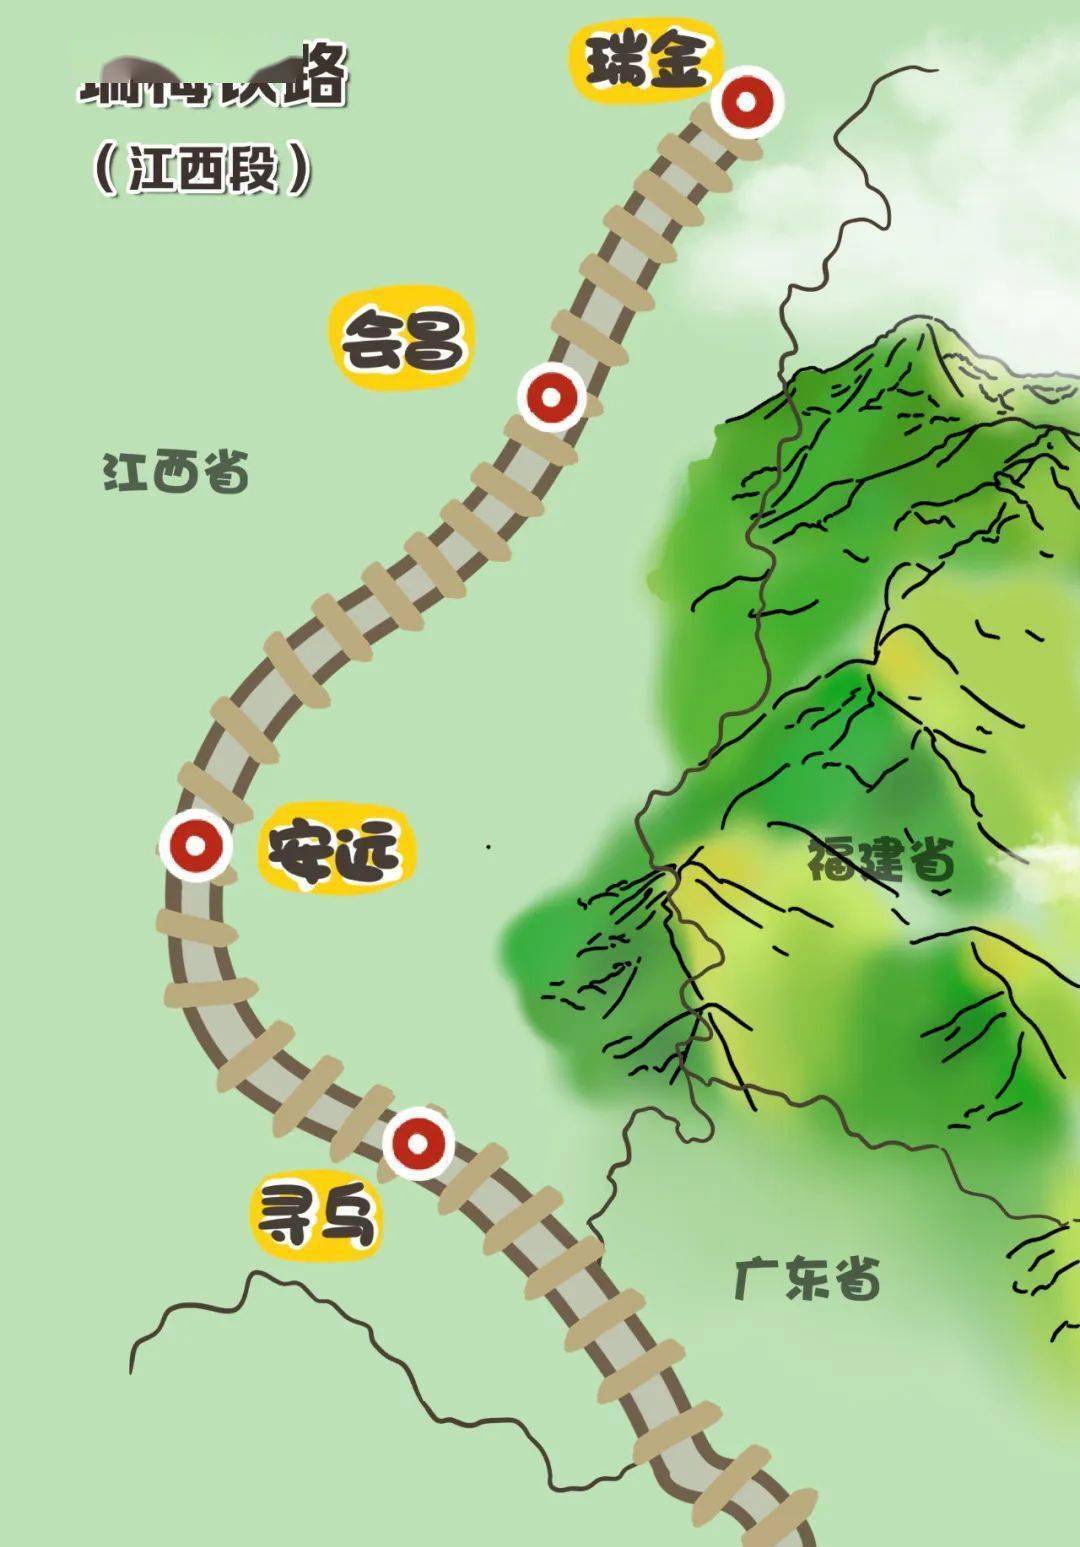 瑞梅铁路平远段规划图图片